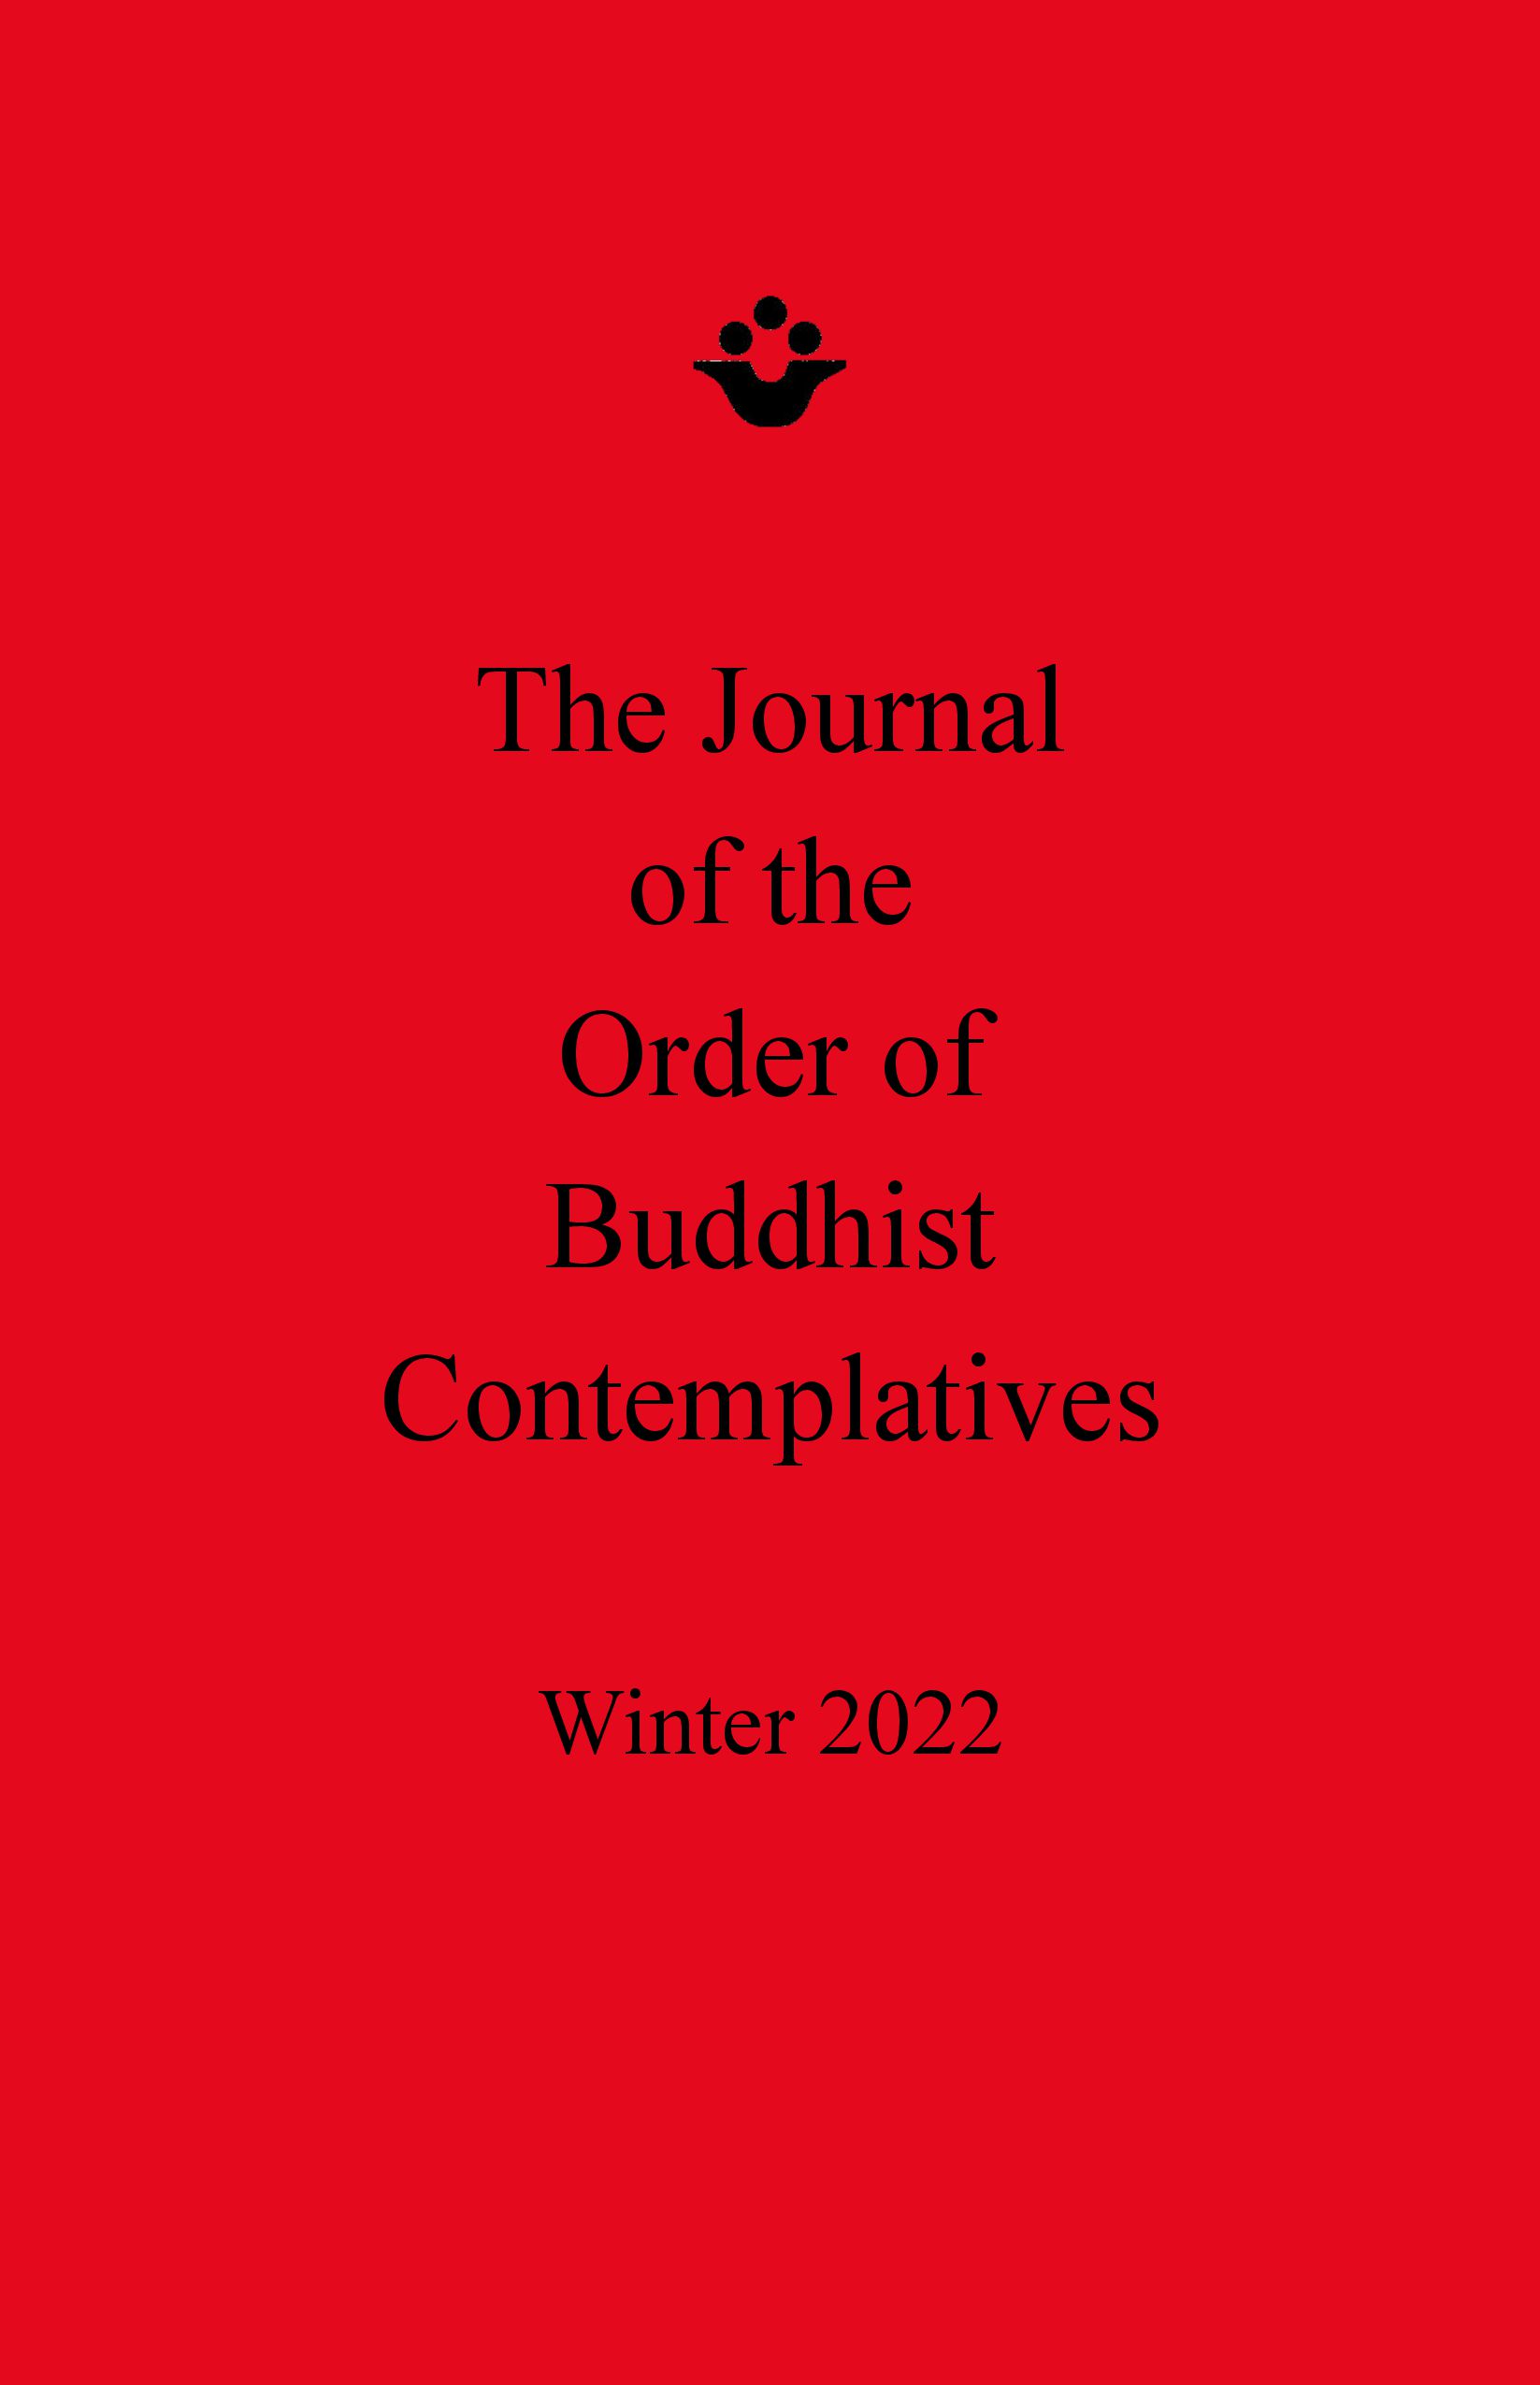 Winter 2022 Journal